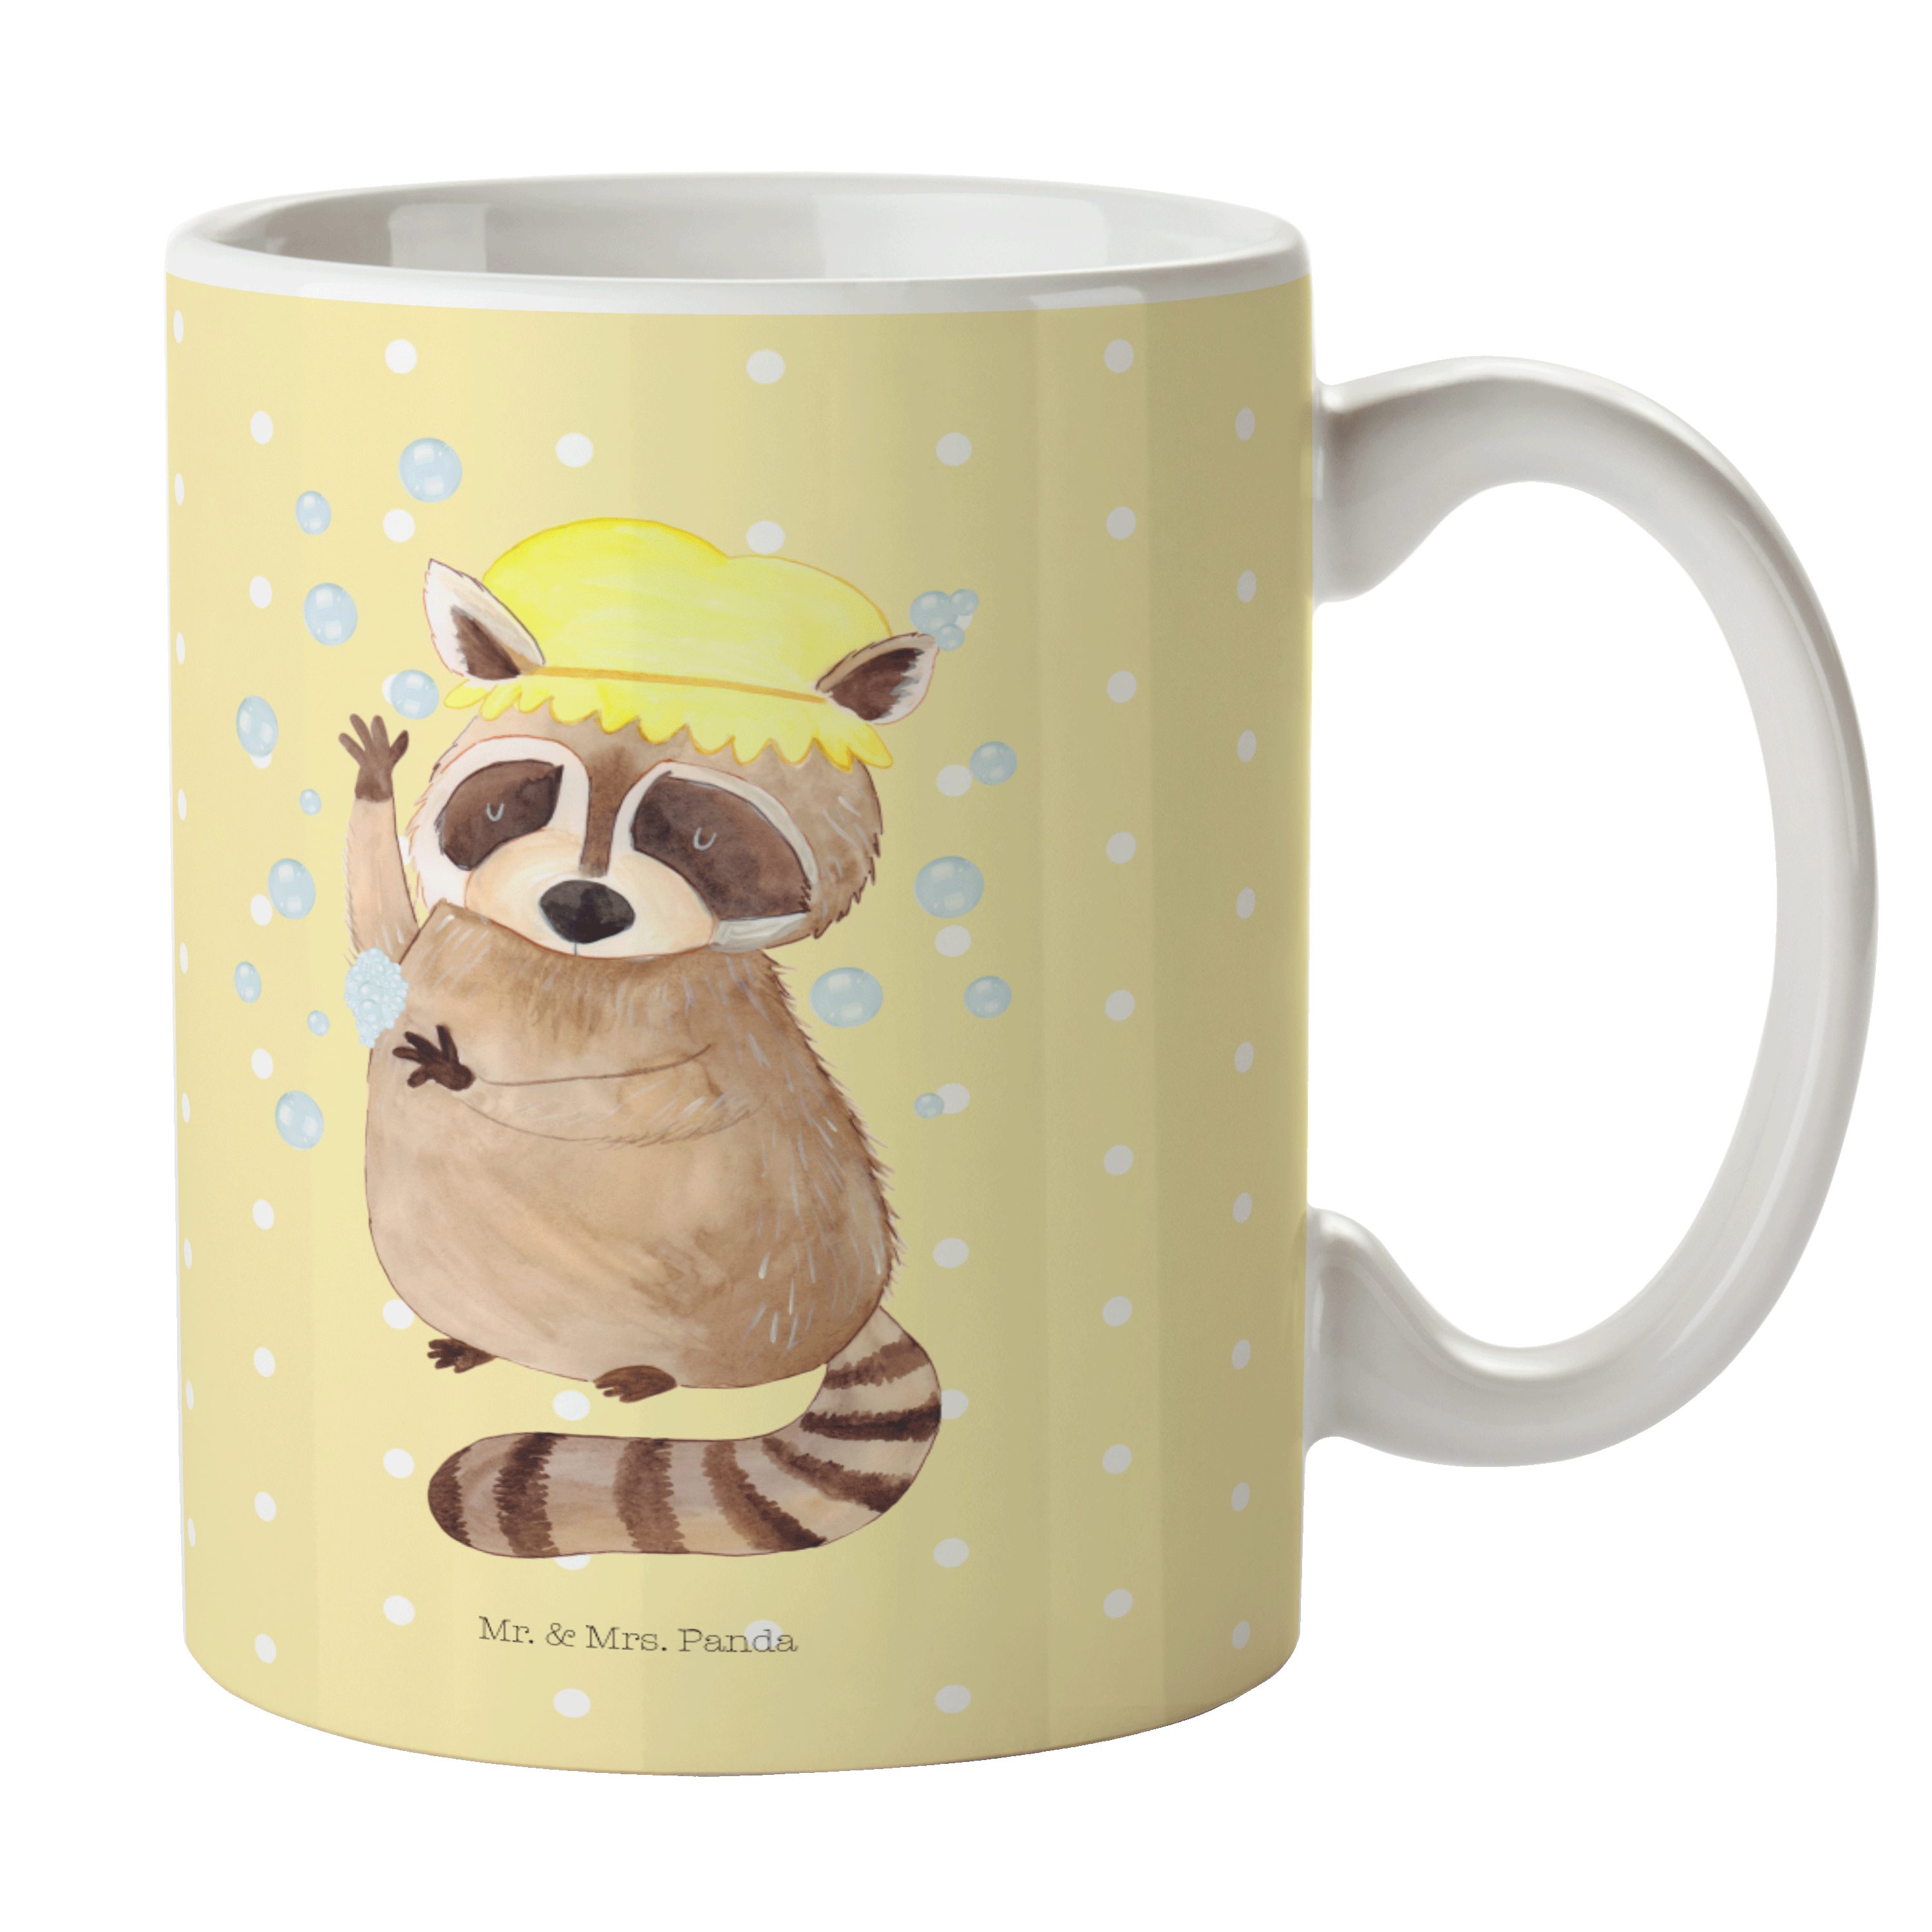 Mr. & Mrs. Panda Tasse Waschbär - Gelb Pastell - Geschenk, Tiere, Geschenk Tasse, Gute Laune, Keramik